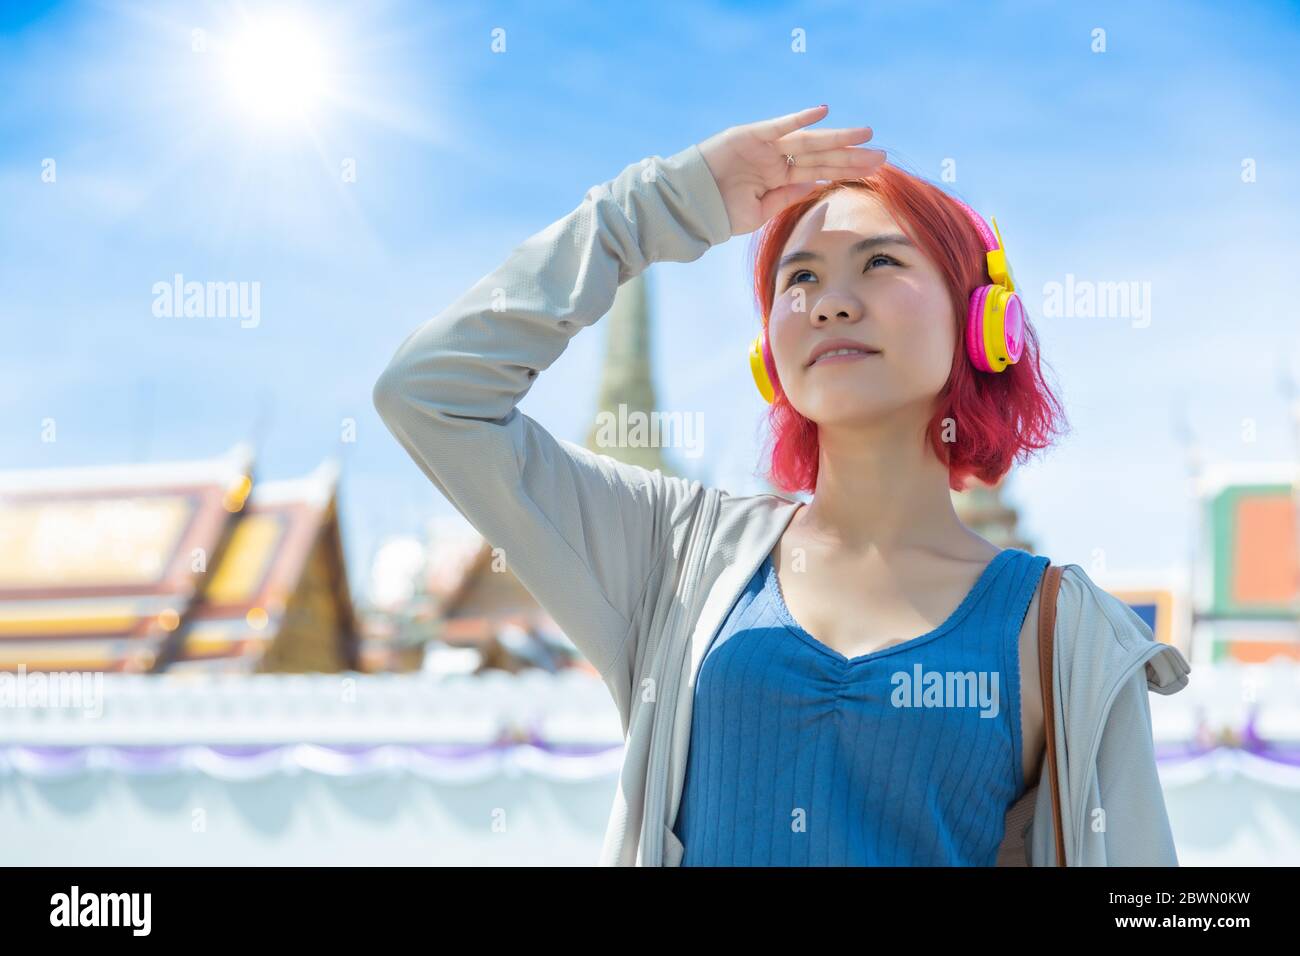 Asiatische Mädchen teen rote Haare gefärbt stehen im Freien gegen hohe UV-Sonne Licht im Sommer Saison sonnigen Tag Himmel Thai Tempel Hintergrund. Stockfoto